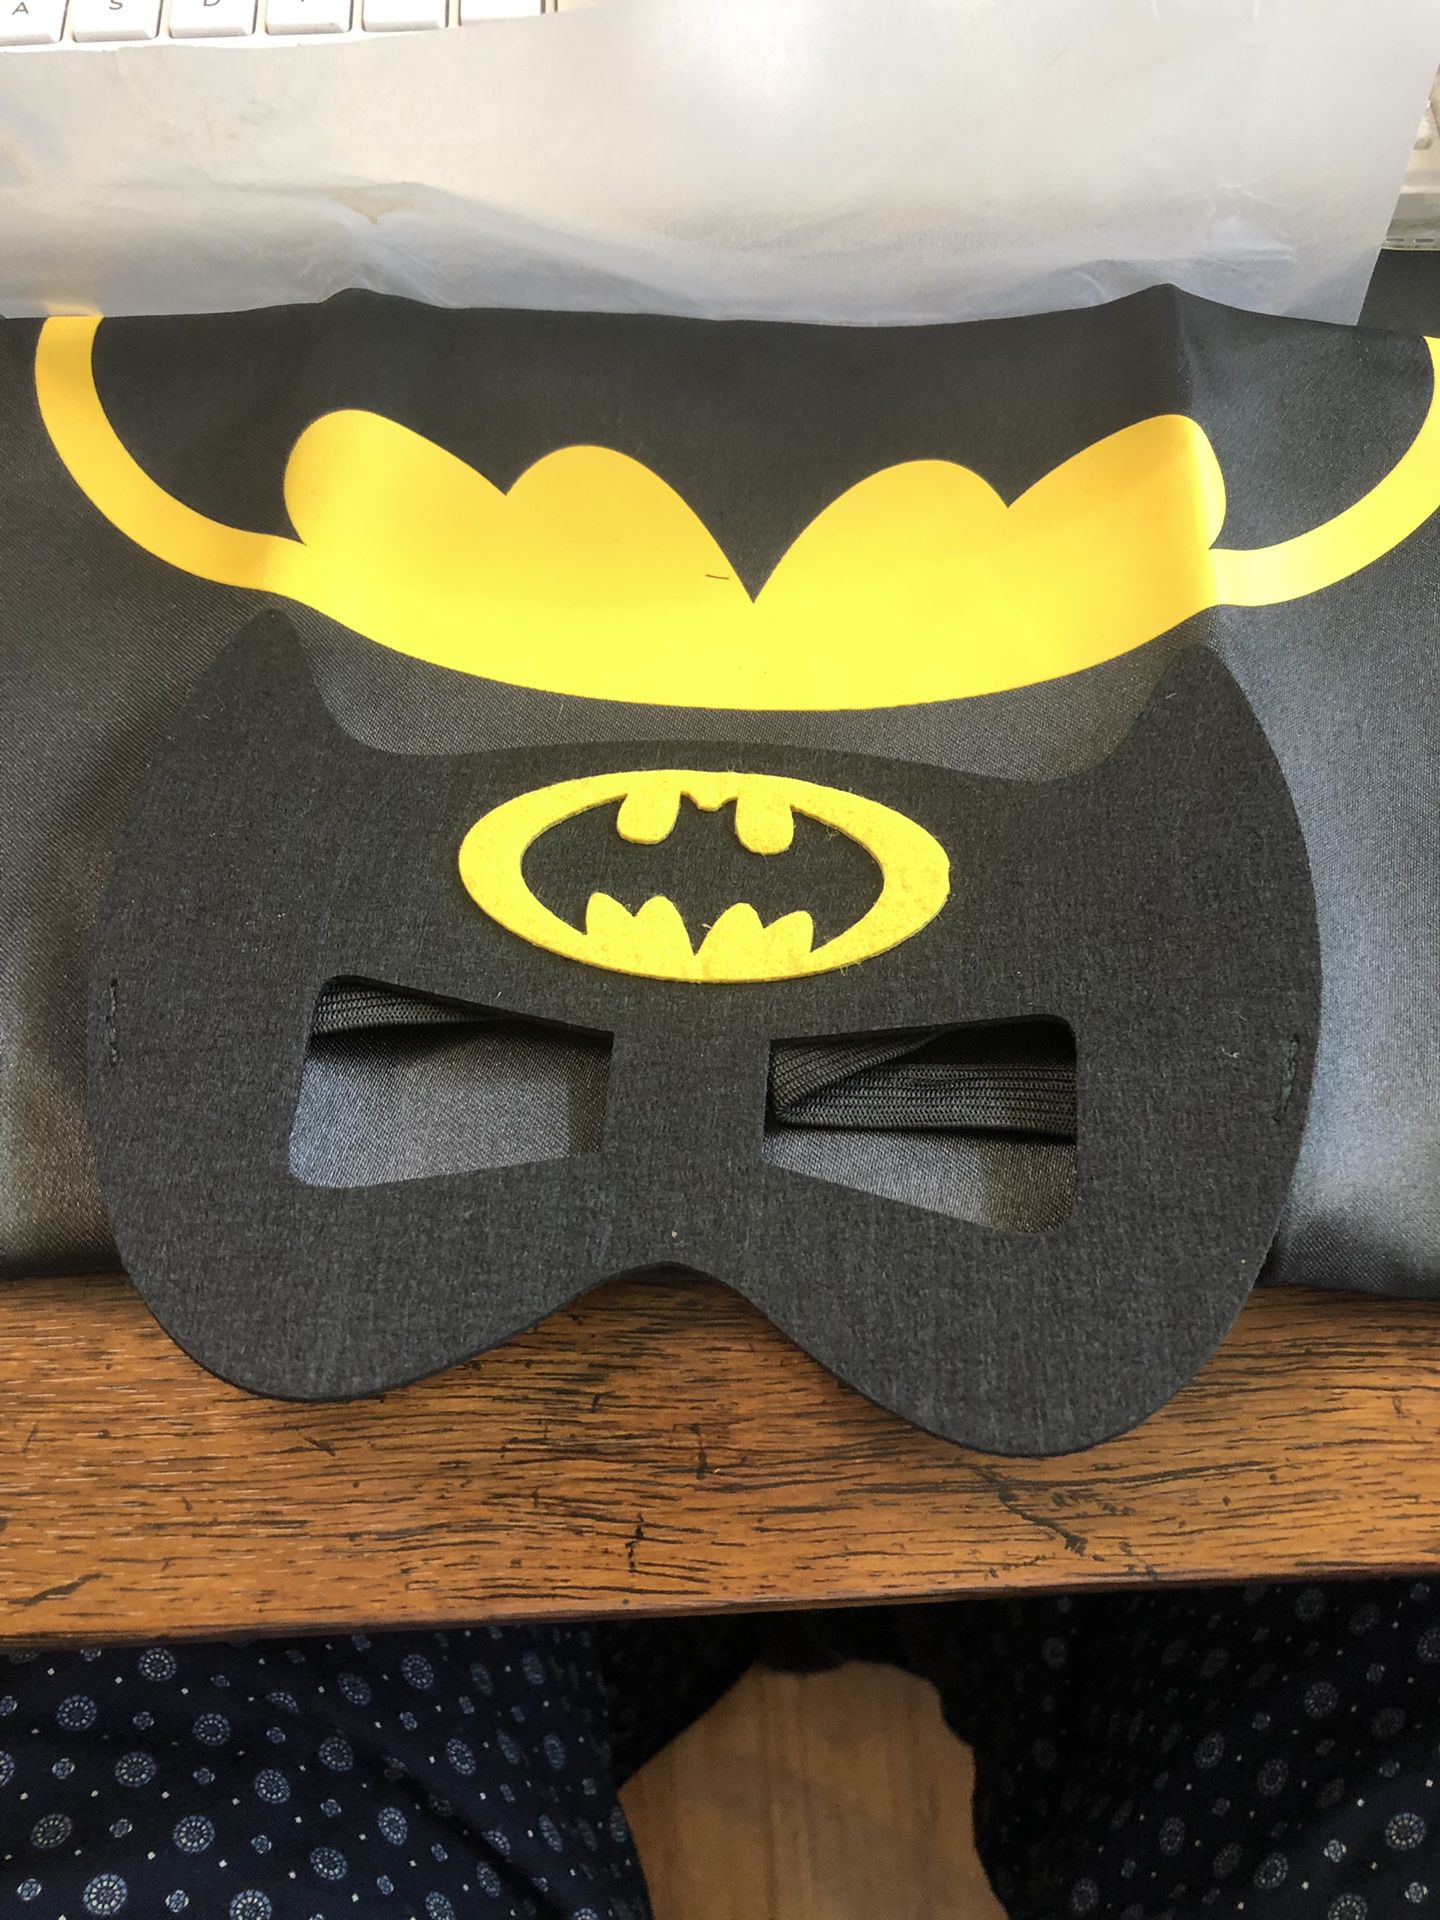 Batman mask and cape small child’s costume new